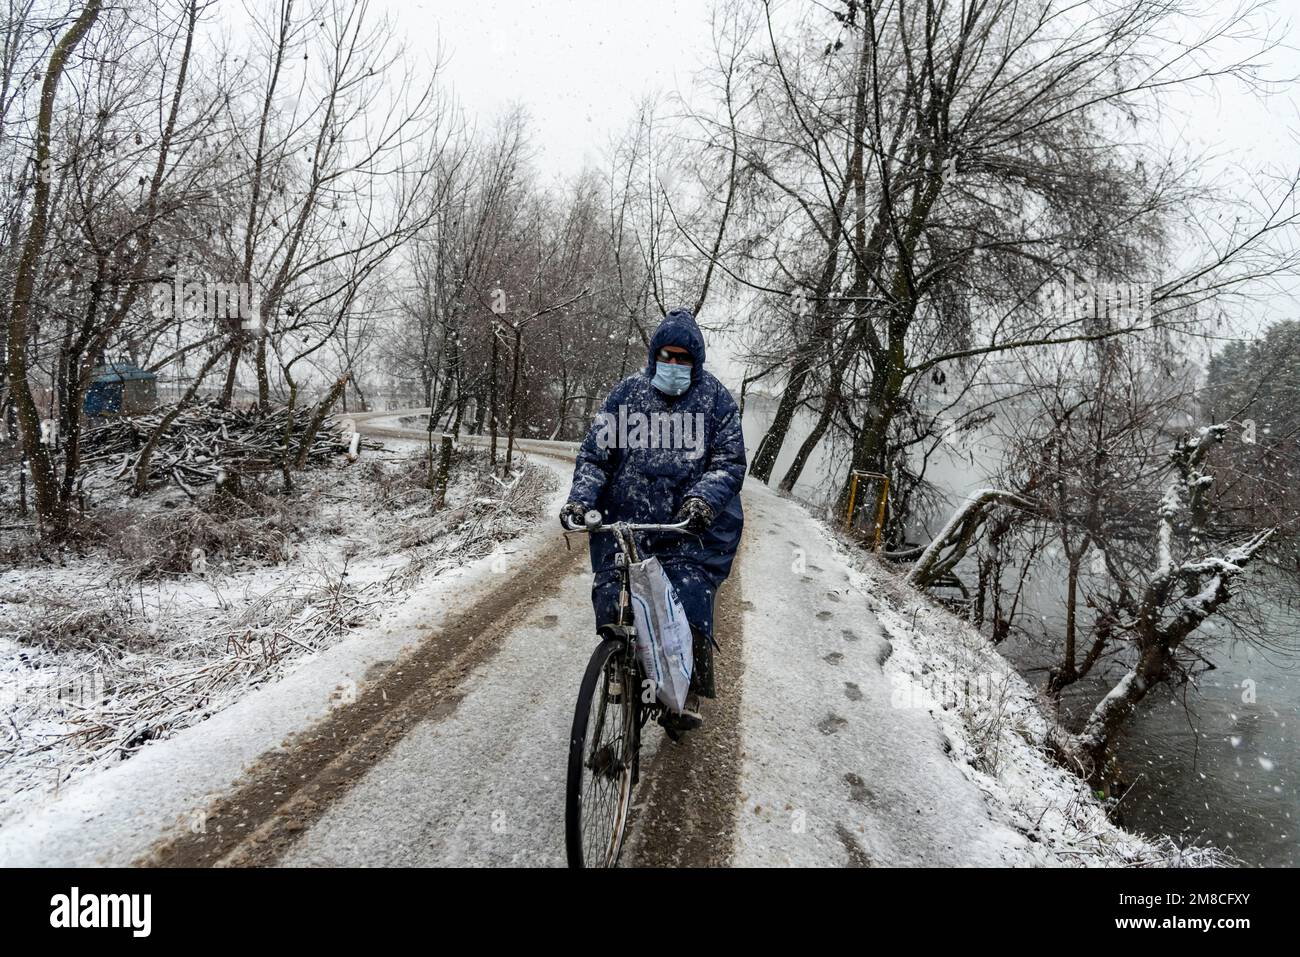 Un uomo guarda su mentre guida una bicicletta lungo una strada coperta di neve durante la caduta di neve. Il Kashmir ha ricevuto nevicate fresche, con le cali più alte della valle che hanno ricevuto nevicate da moderate a pesanti e nevicate da leggere a moderate in pianura, causando una visibilità distruttiva. Questo ha influito sulle operazioni di volo insieme alla chiusura dell'autostrada nazionale Srinagar-Jammu. Foto Stock